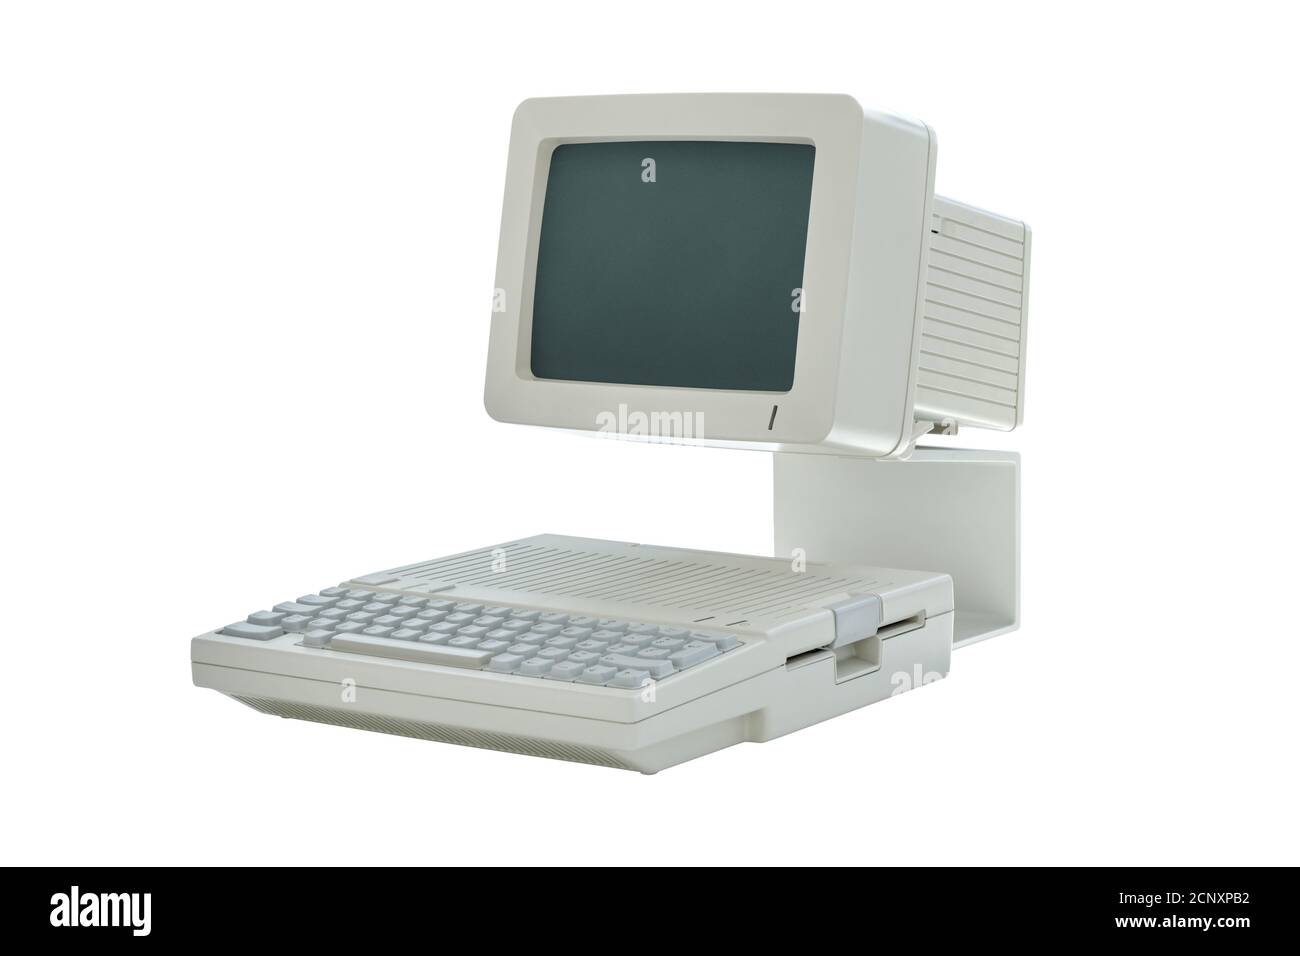 Ancien ordinateur de bureau vintage des années 80 avec moniteur et clavier intégrés isolés sur fond blanc. Vue latérale d'un PC classique rétro Banque D'Images